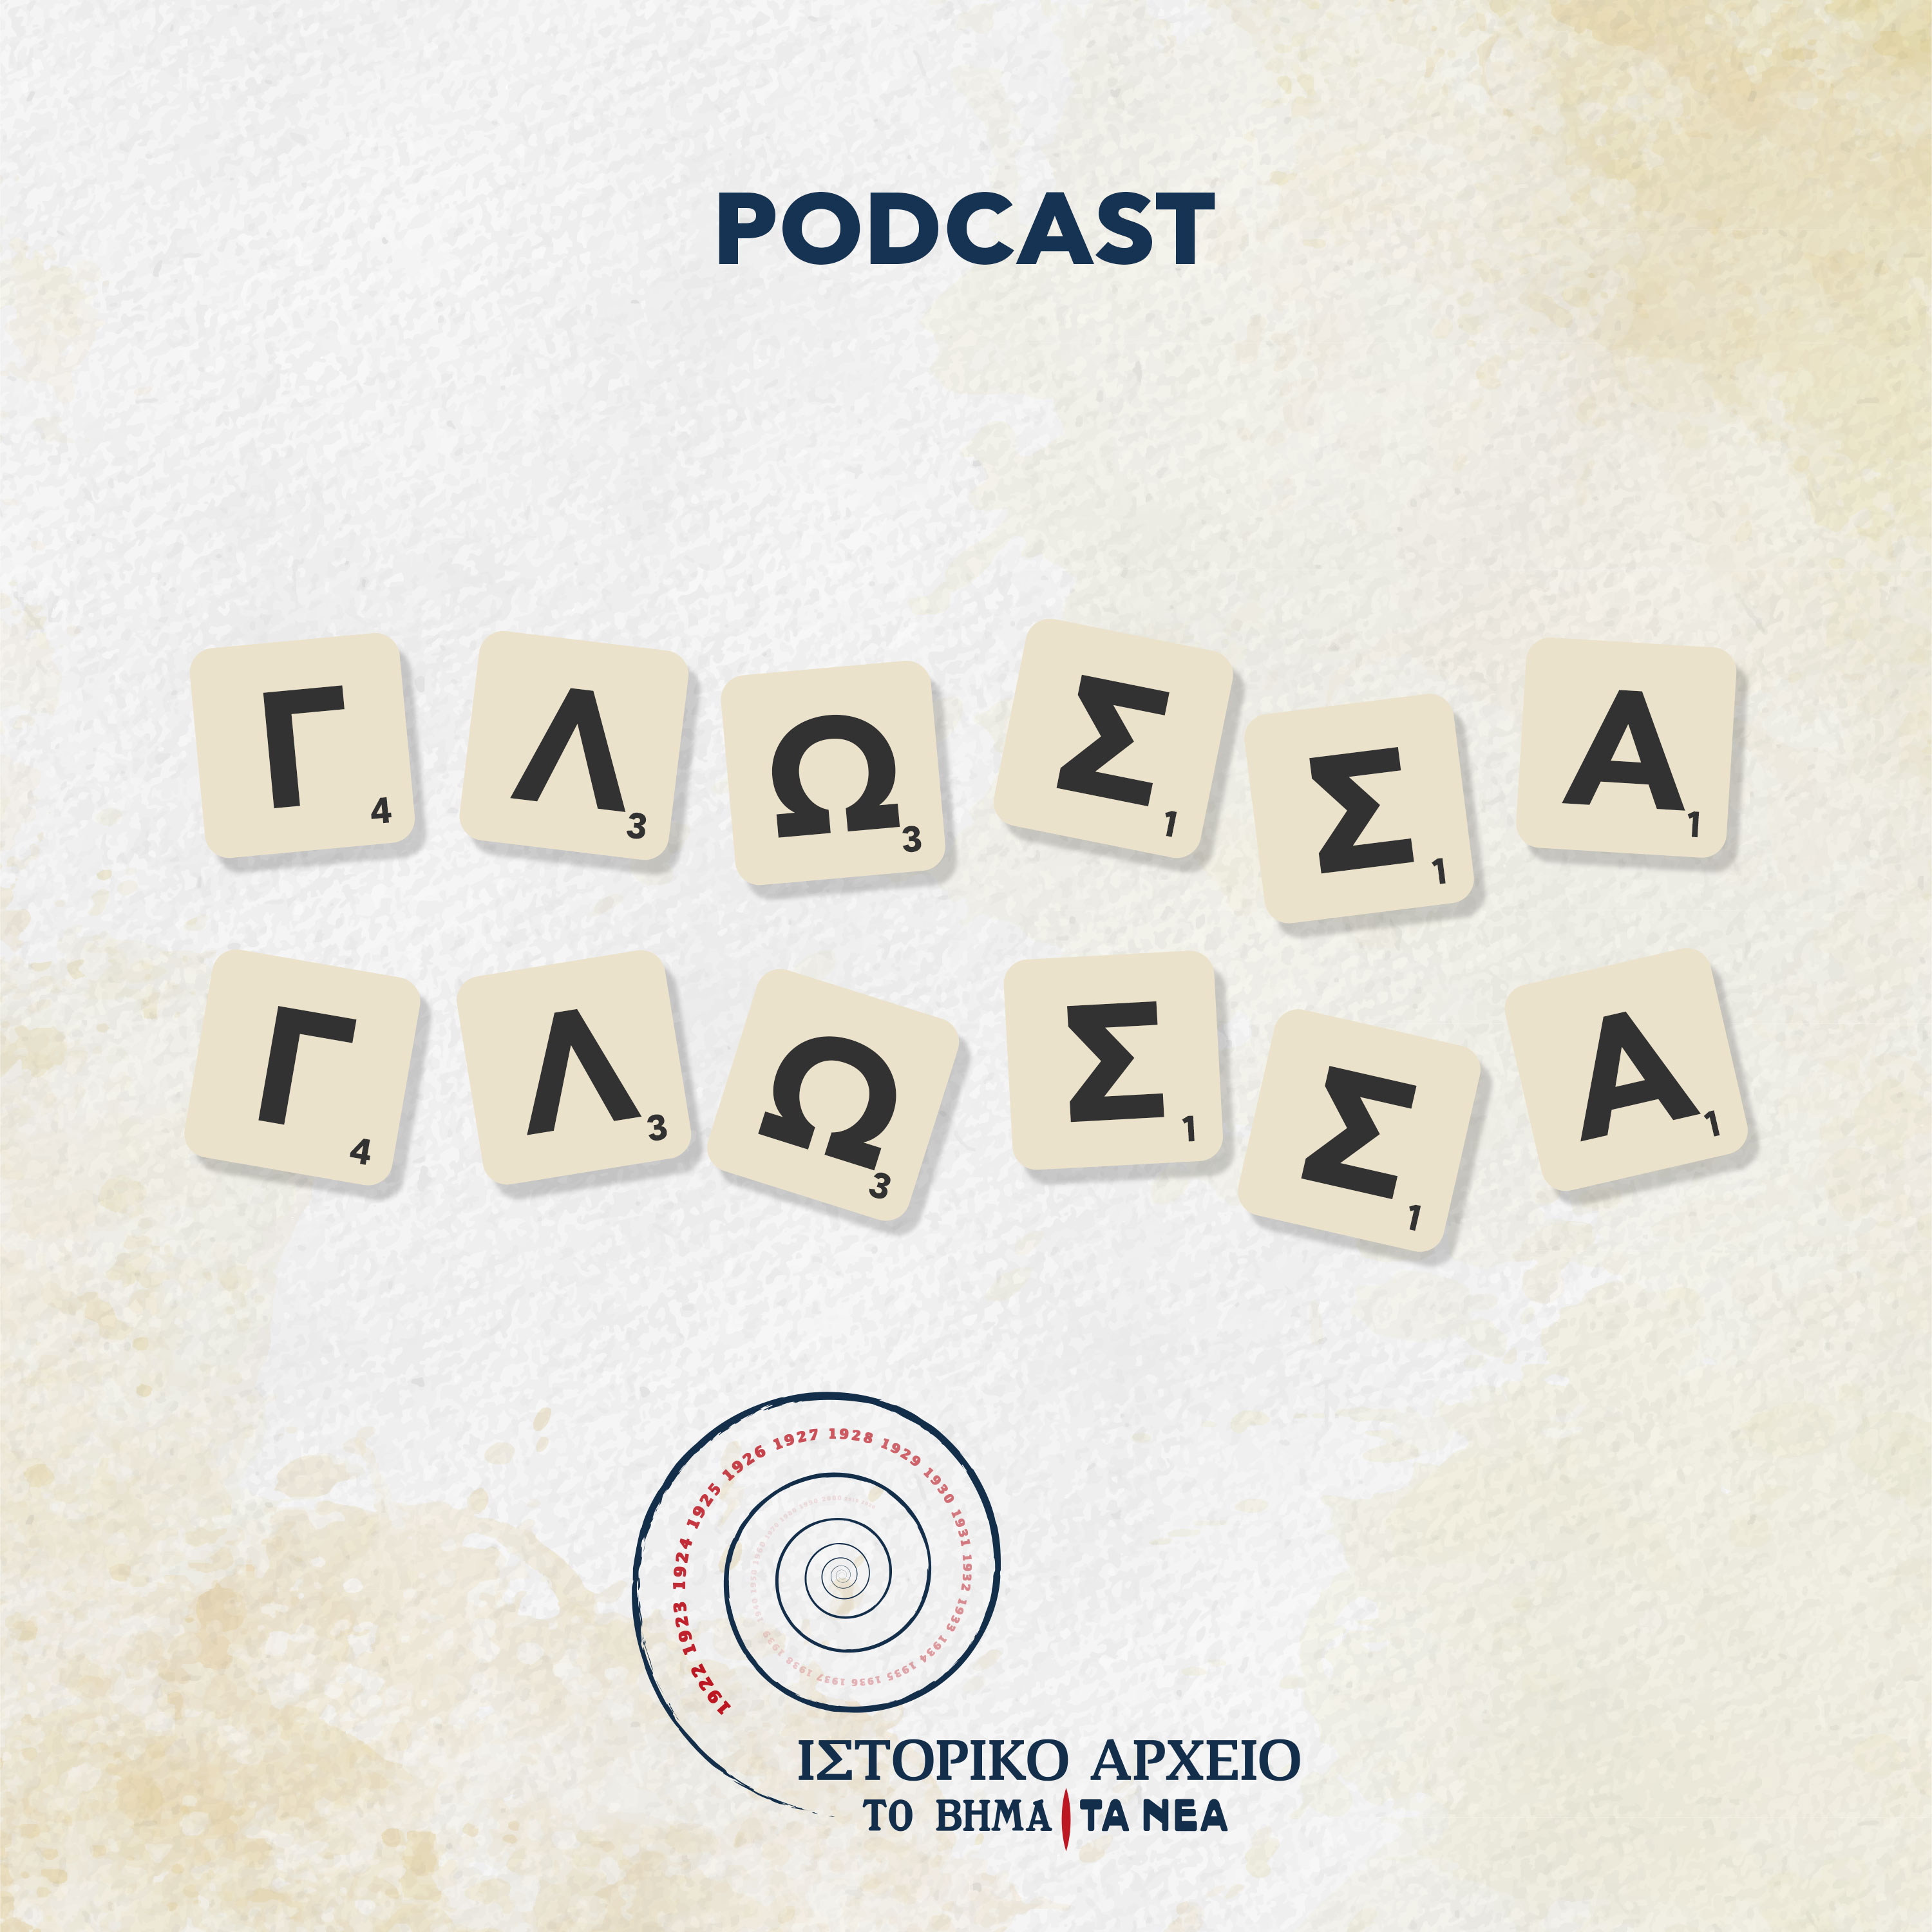 Τα φορολογικά βάσανα των αρχαίων – To 9o επεισόδιο του podcast «Γλώσσα Γλώσσα»